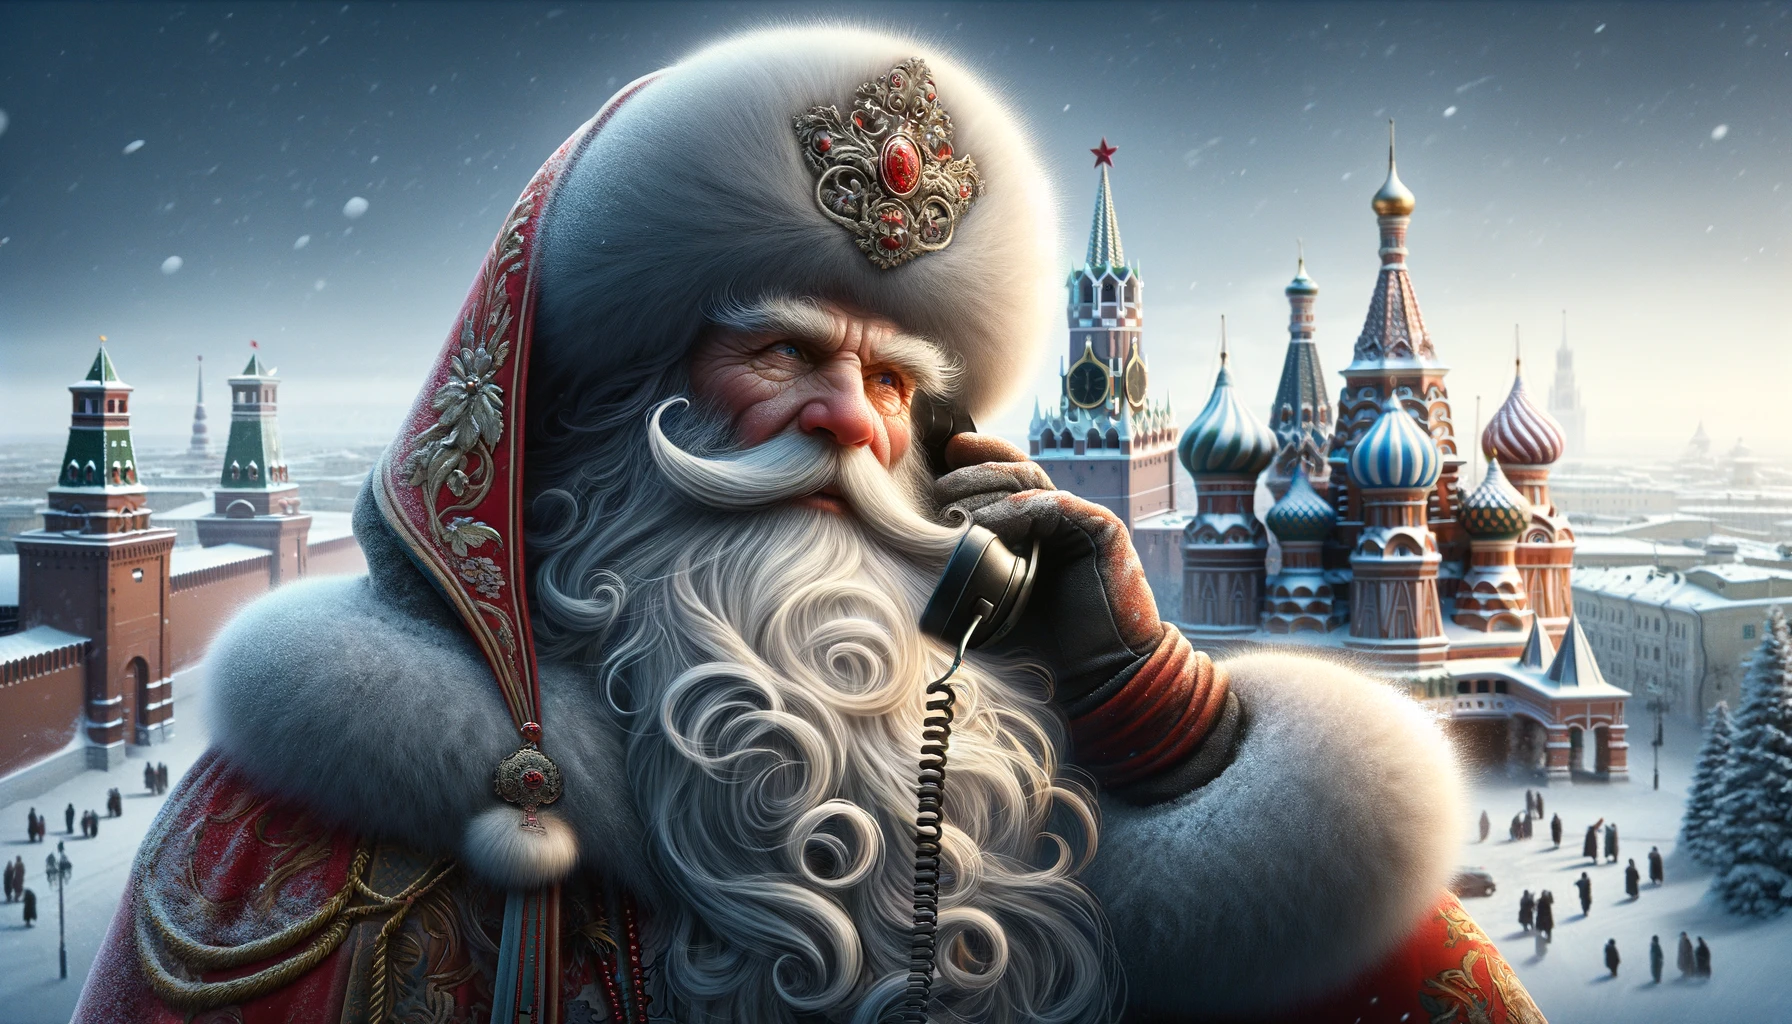 Успейте позвонить: бесплатная горячая линия Деда Мороза открылась до 29 декабря